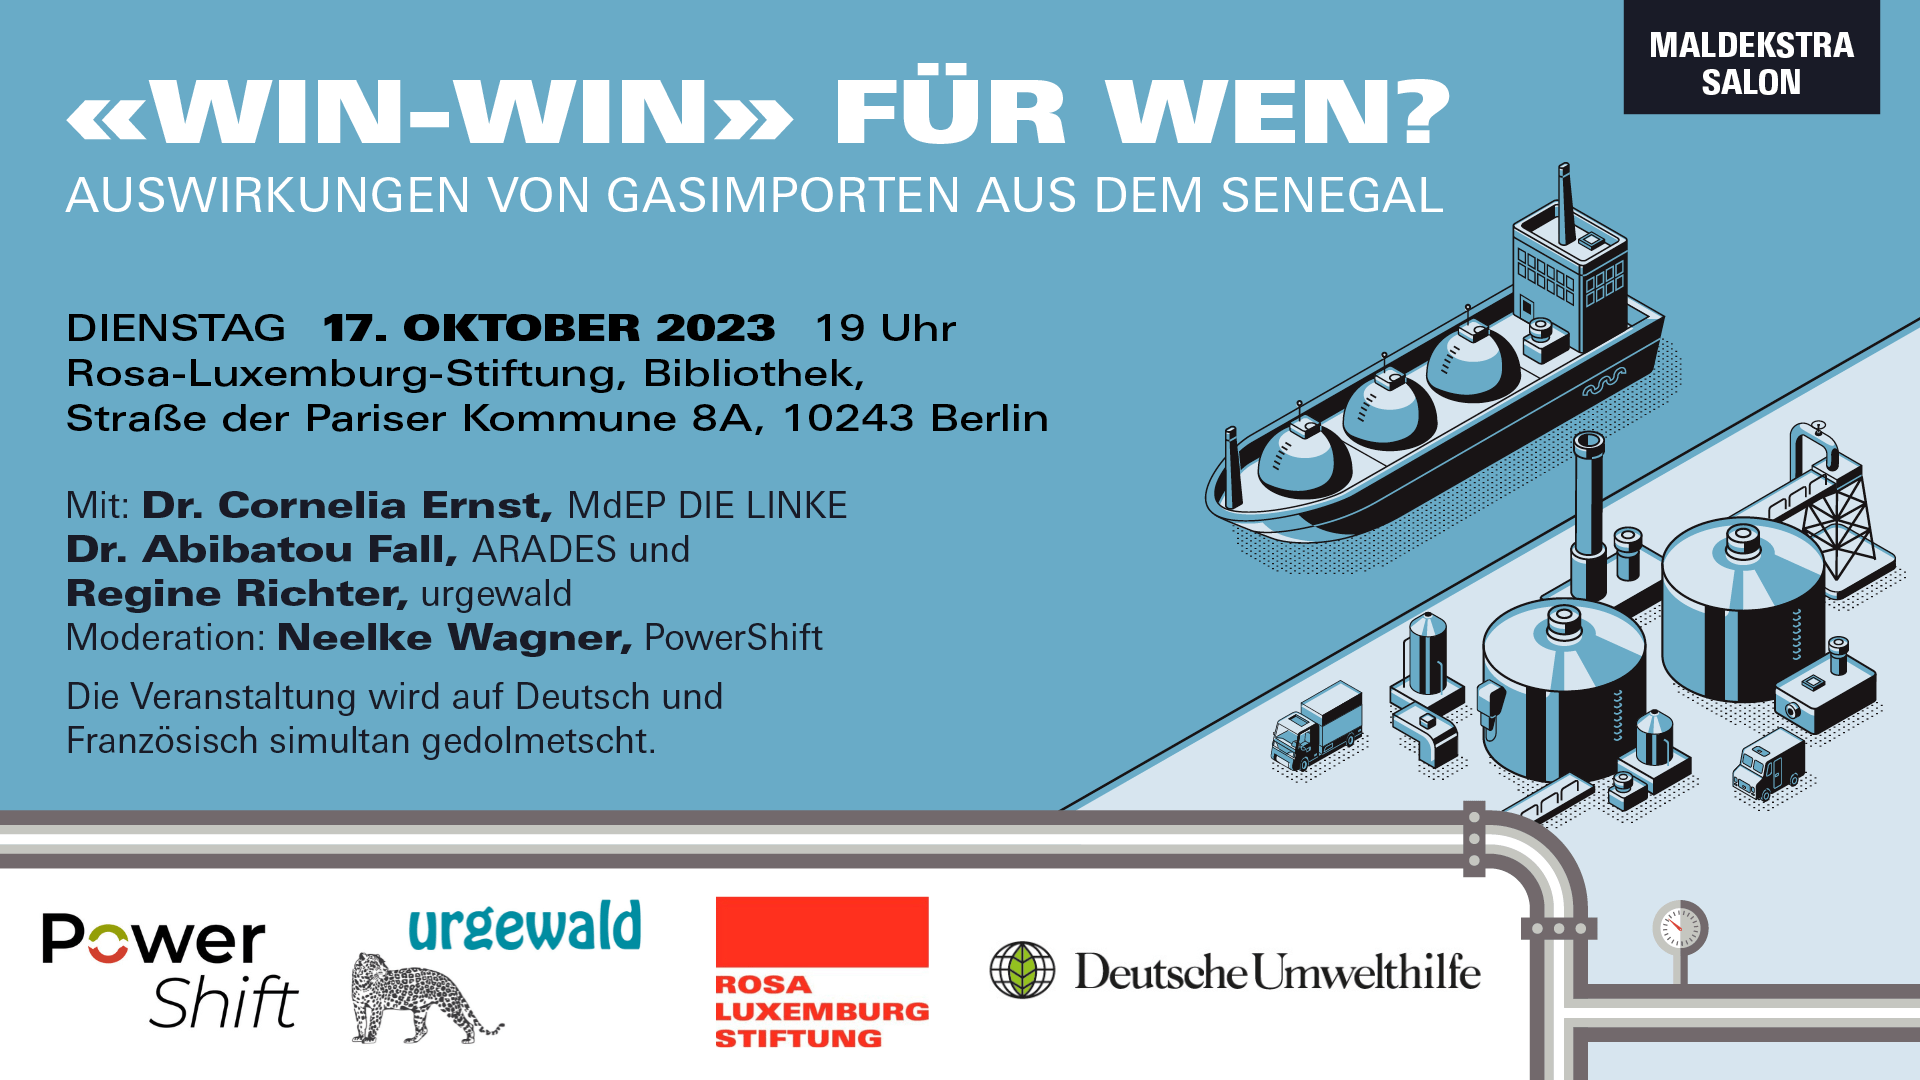 "Win-Win" für wen? Podiumsdiskussion am 17.10. 23 um 19 Uhr in der Bibliothek der Rosa-Luxemburg-Stiftung, mit Dr. Abibatou Fall, Rgeine Richter, Cornelia Ernst